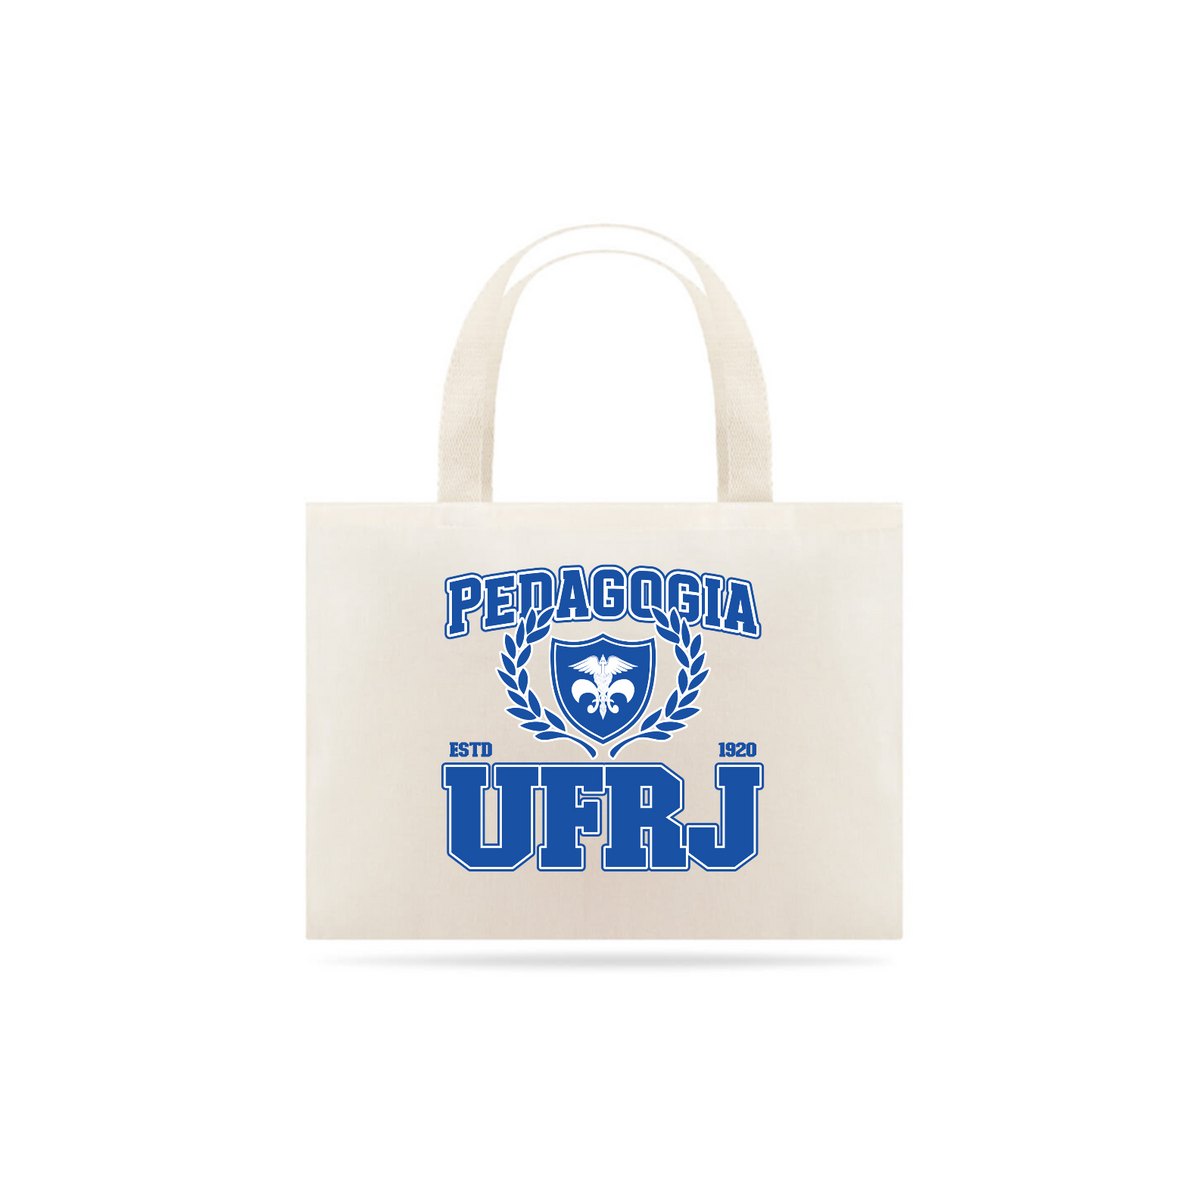 Nome do produto:  UniVerso - Ecobag Pedagogia UFRJ 